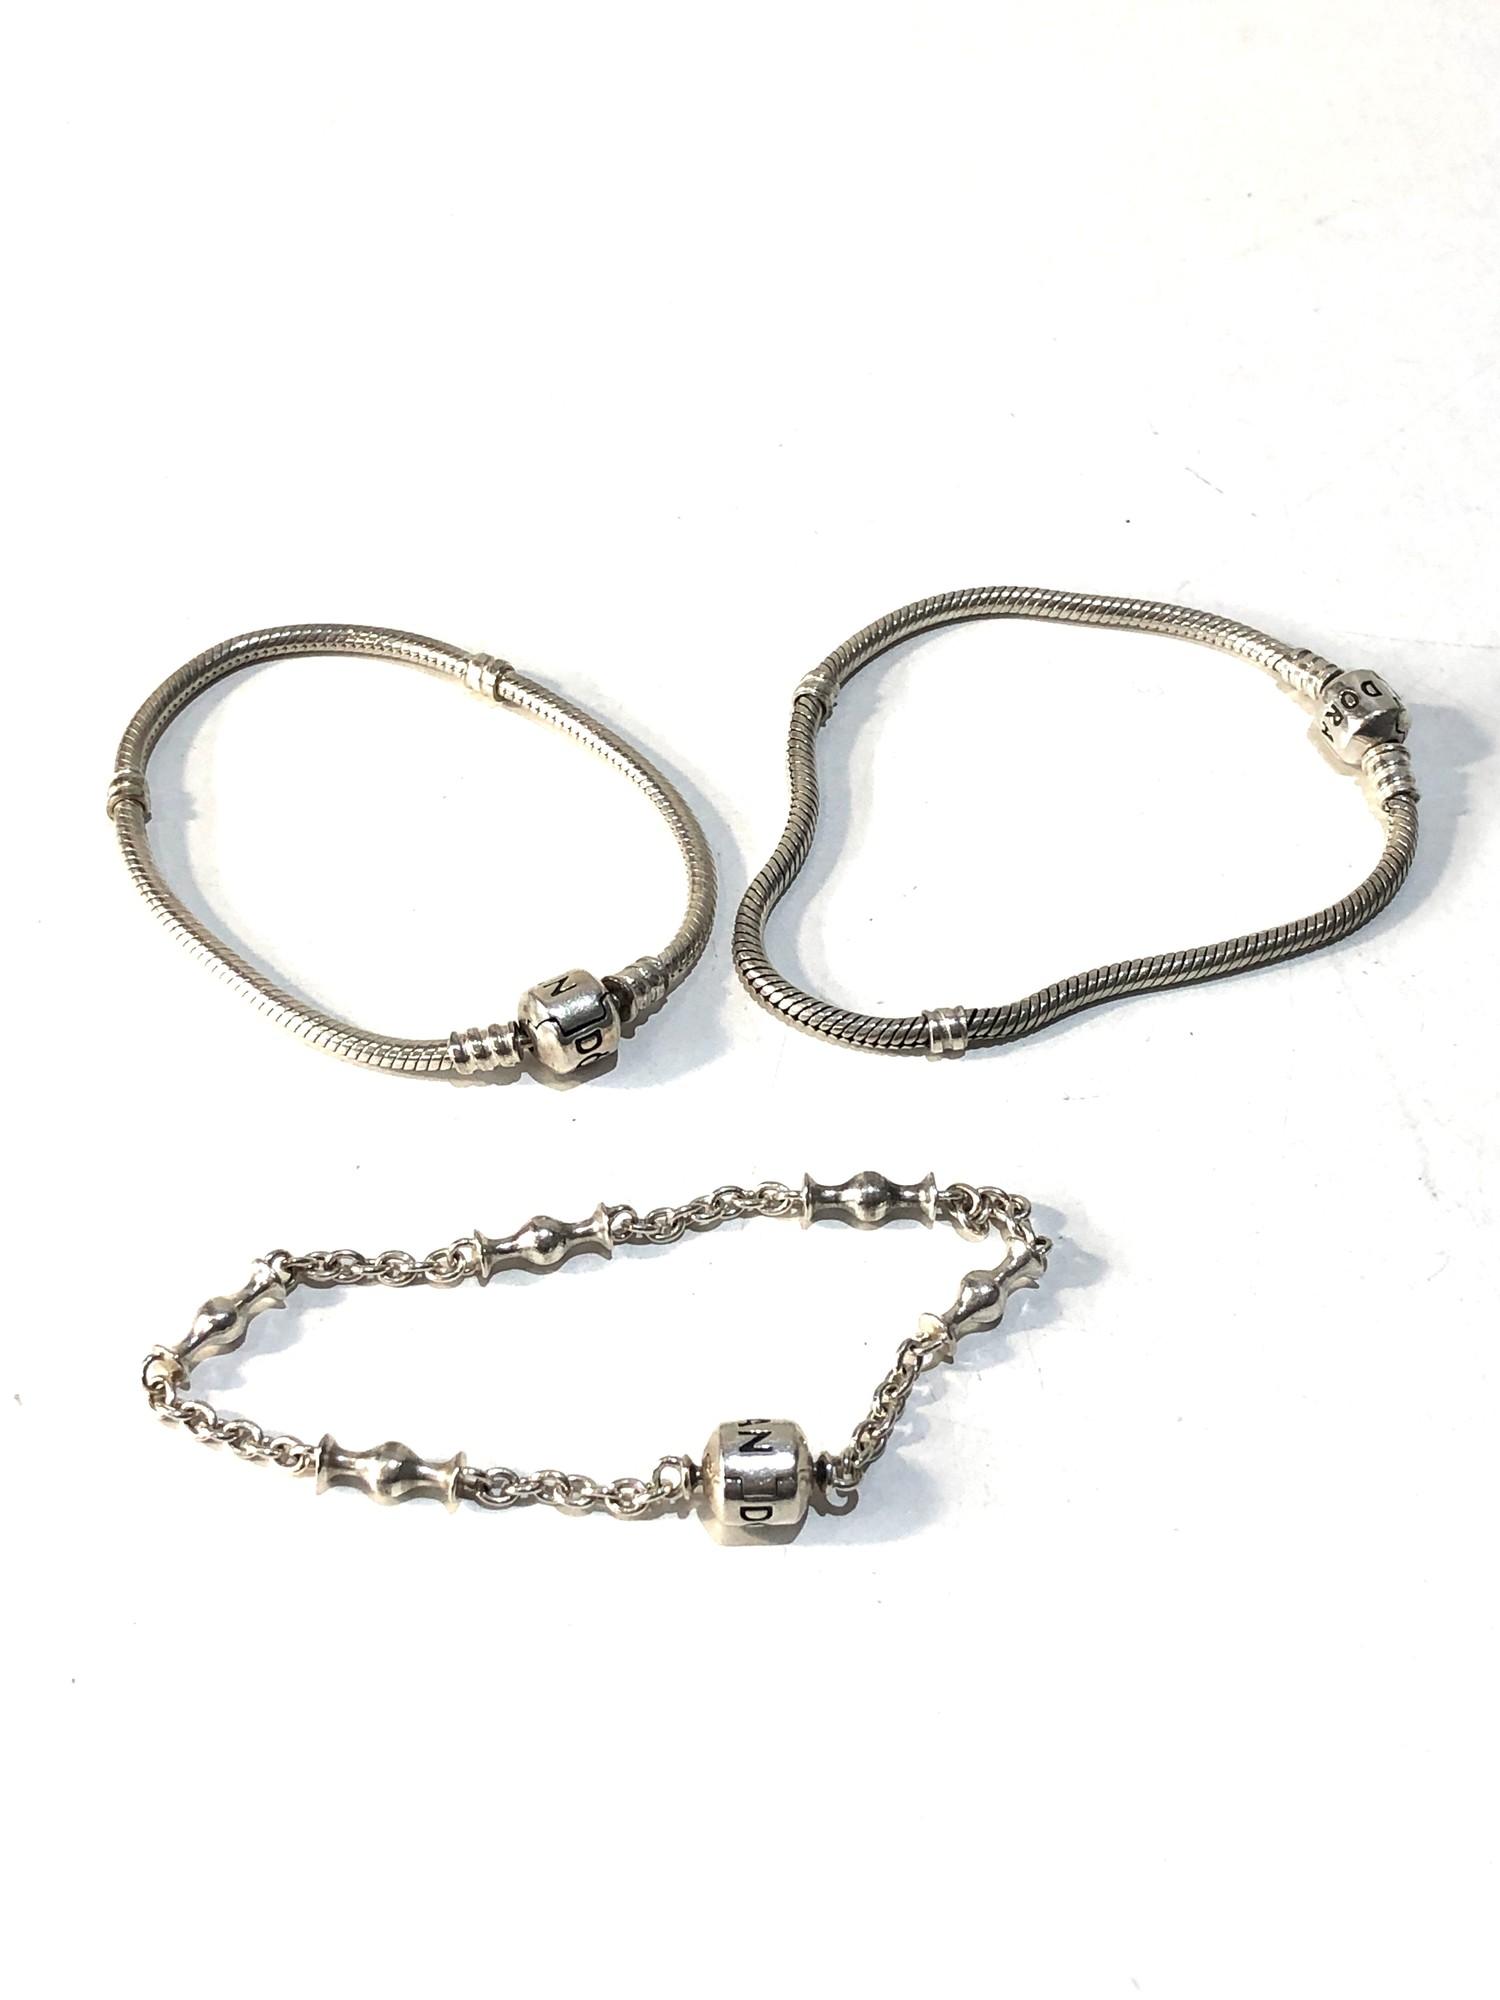 3 silver pandora bracelets